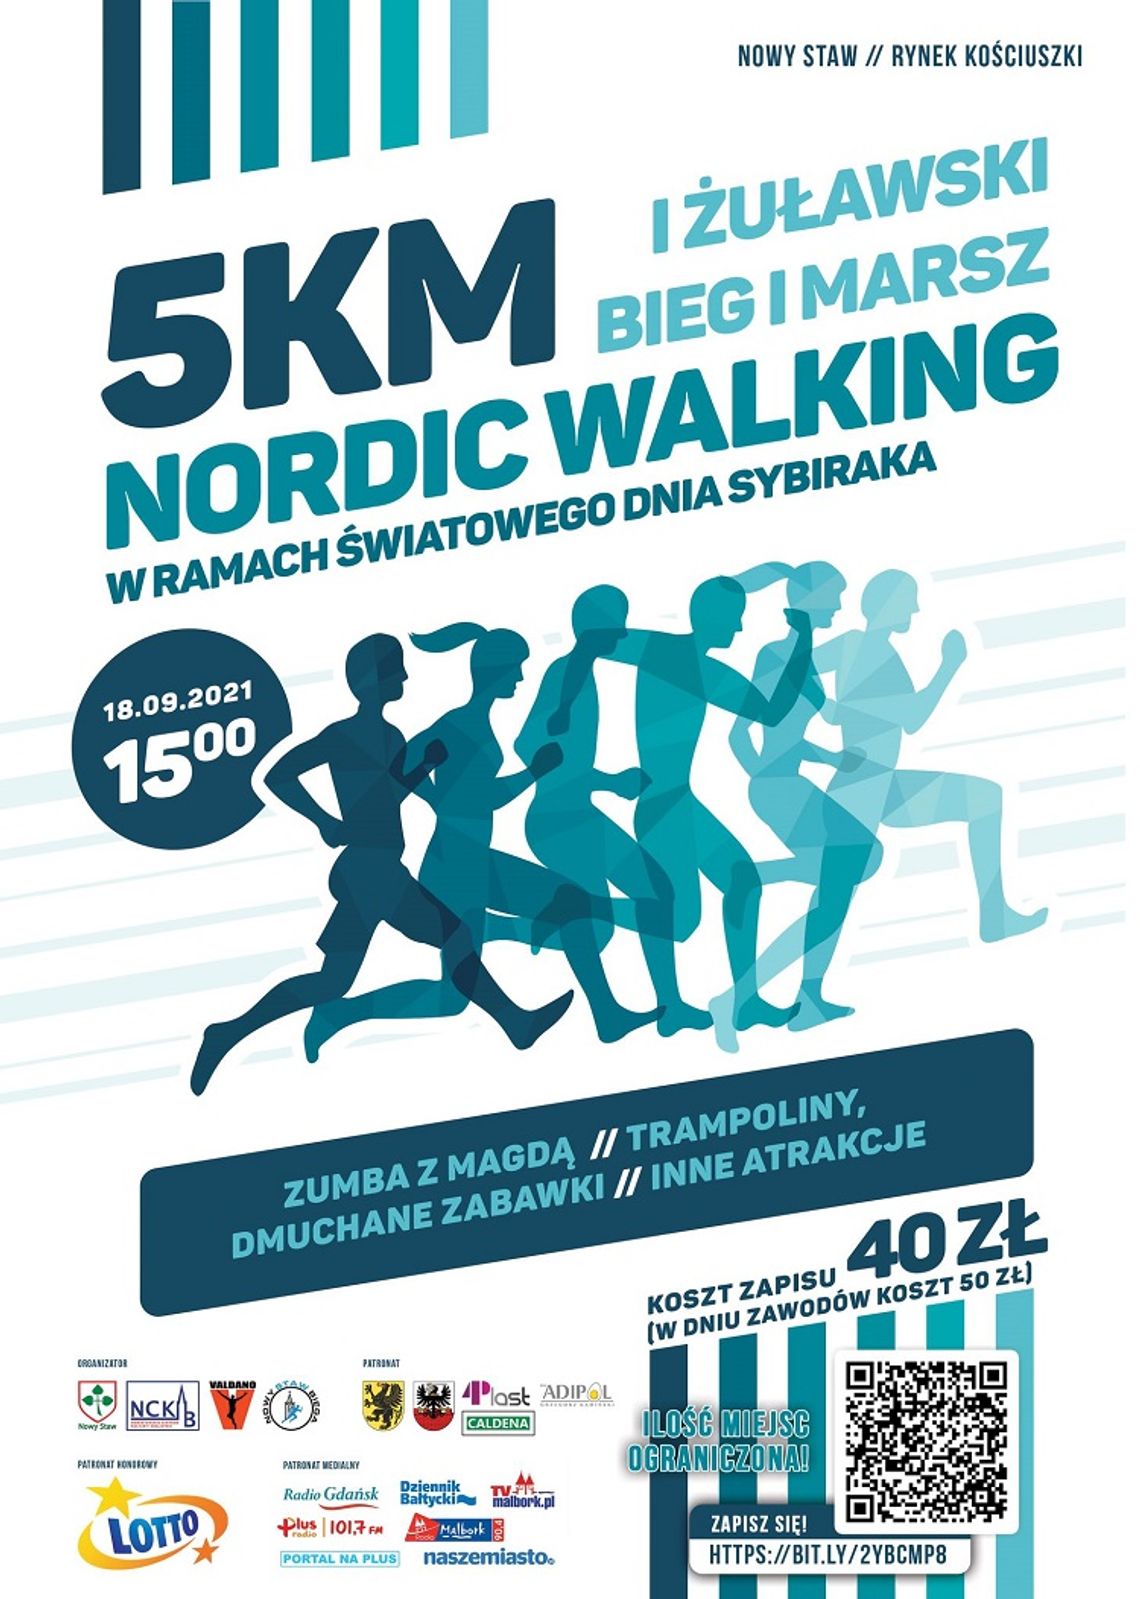 I Żuławski Bieg i Marsz Nordic Walking w ramach Światowego Dnia Sybiraka w Nowym Stawie.